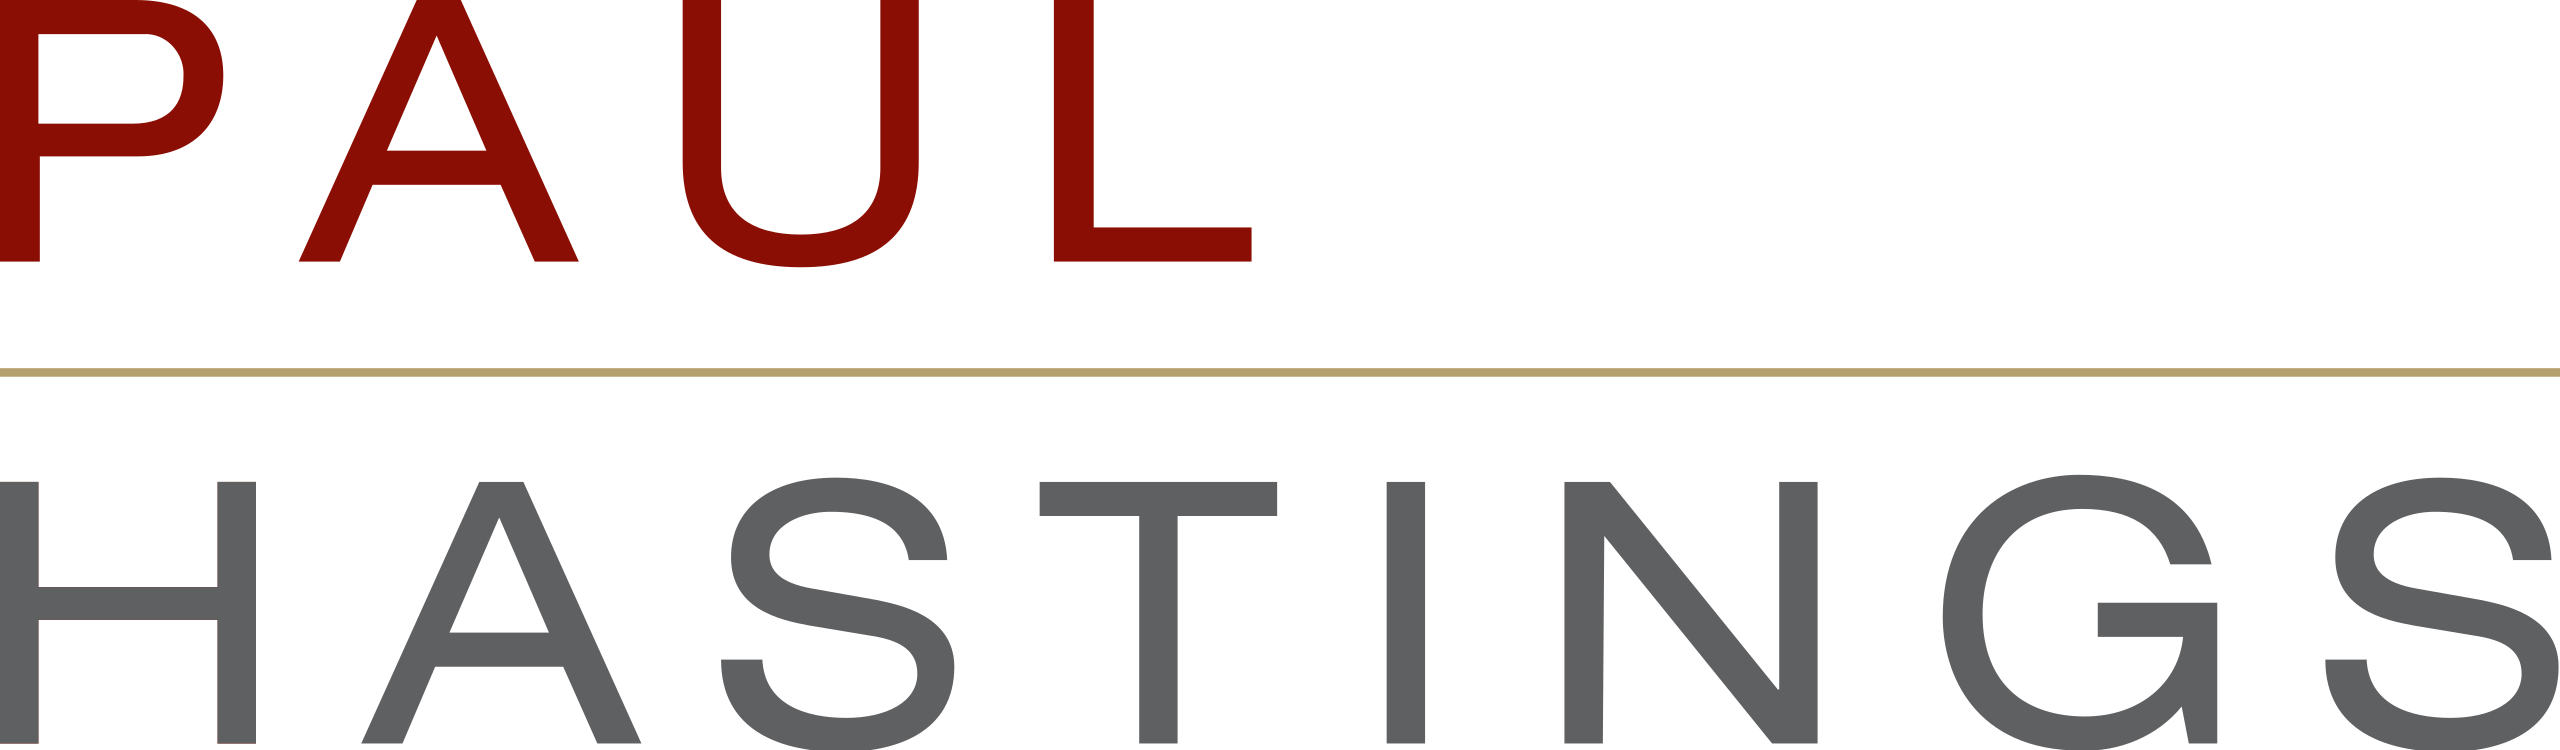 paul hastings logo (1)